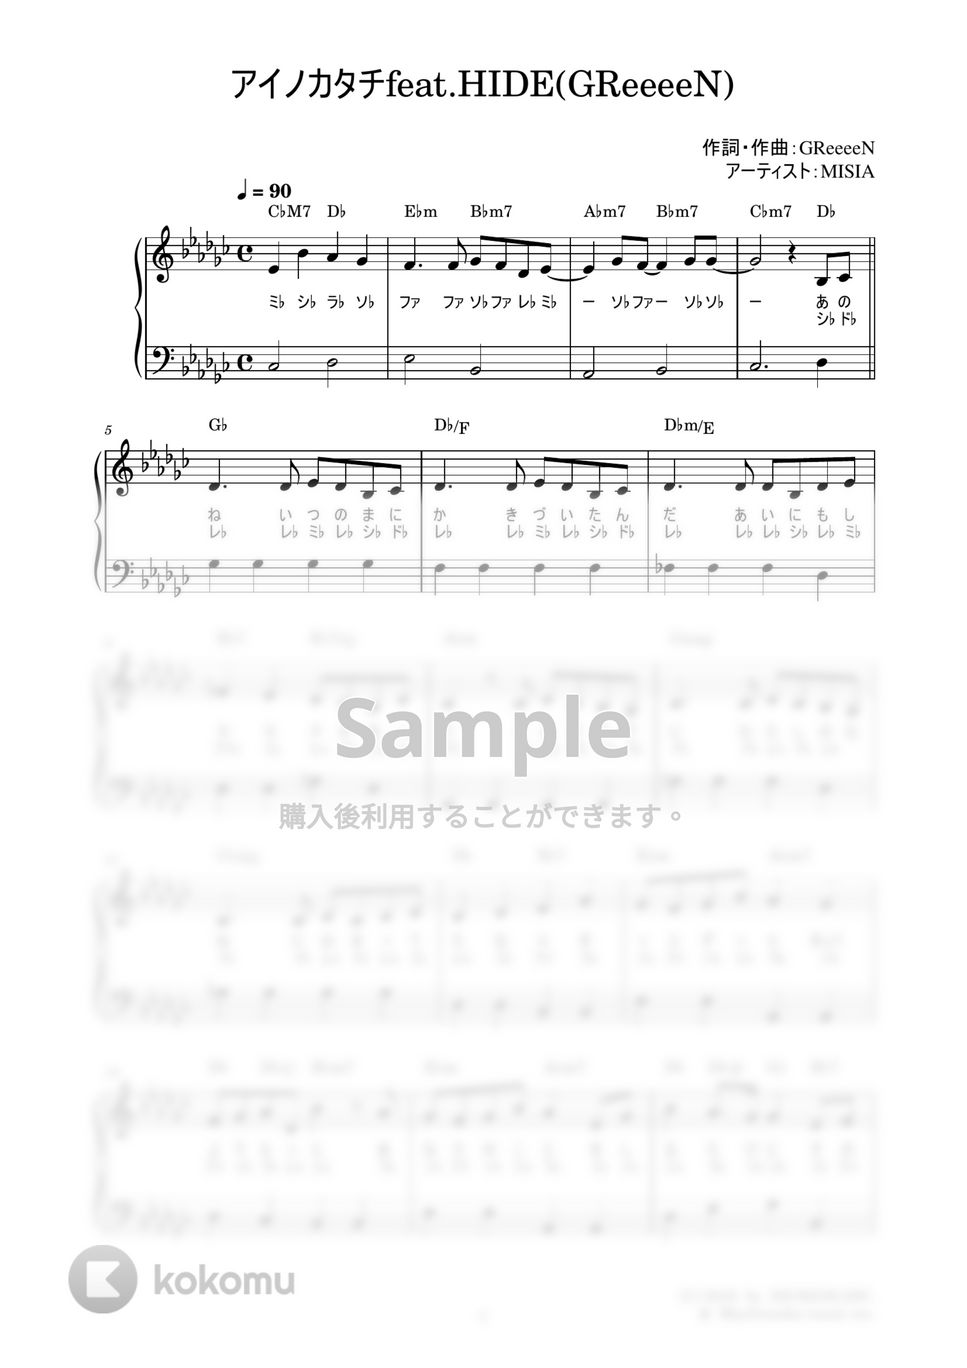 MISIA - アイノカタチFeat.HIDE(GReeeeN) (かんたん / 歌詞付き / ドレミ付き / 初心者) by piano.tokyo